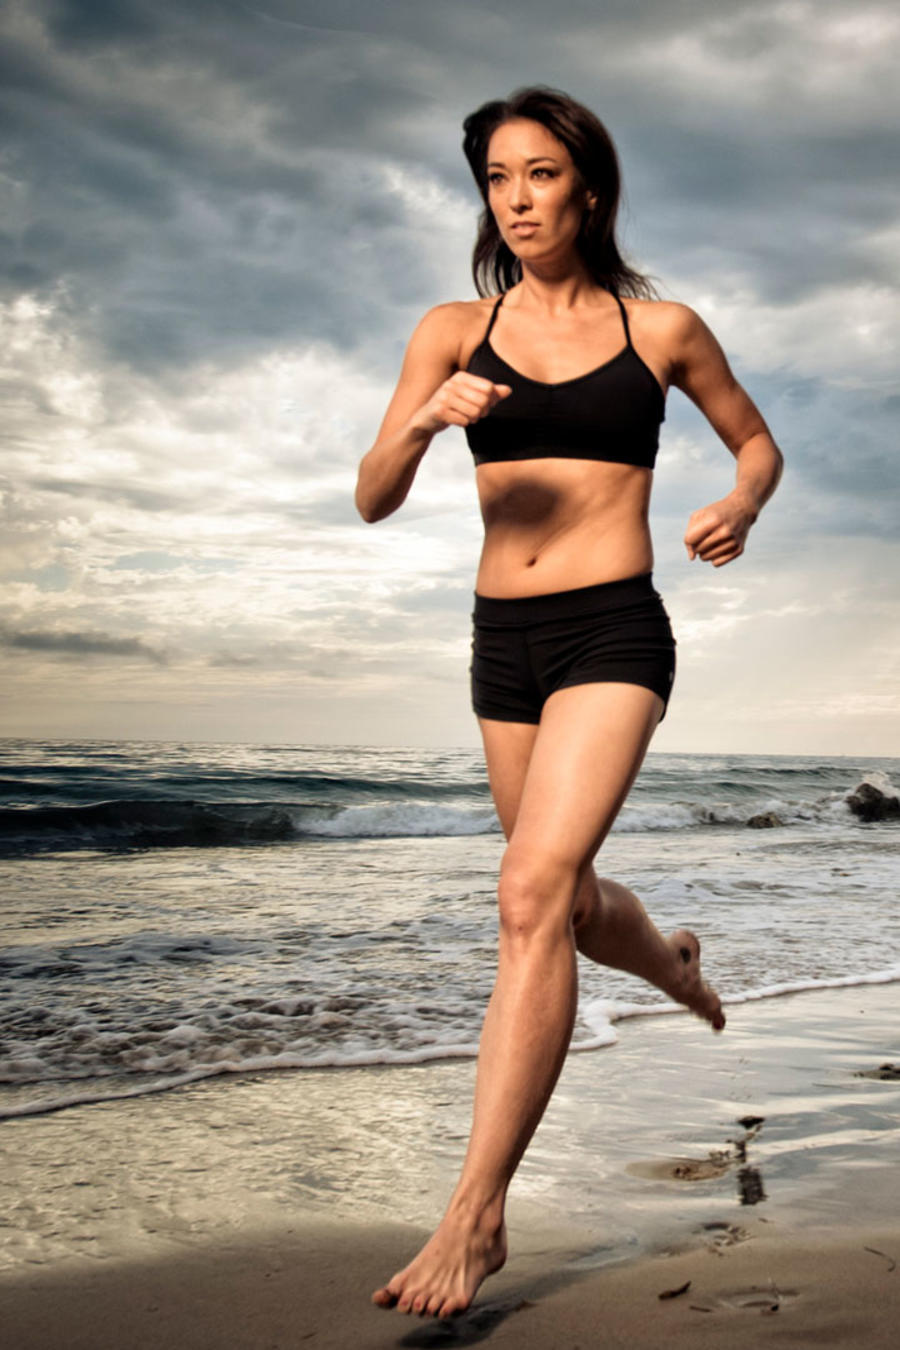 Mujer joven corriendo descalza en la playa